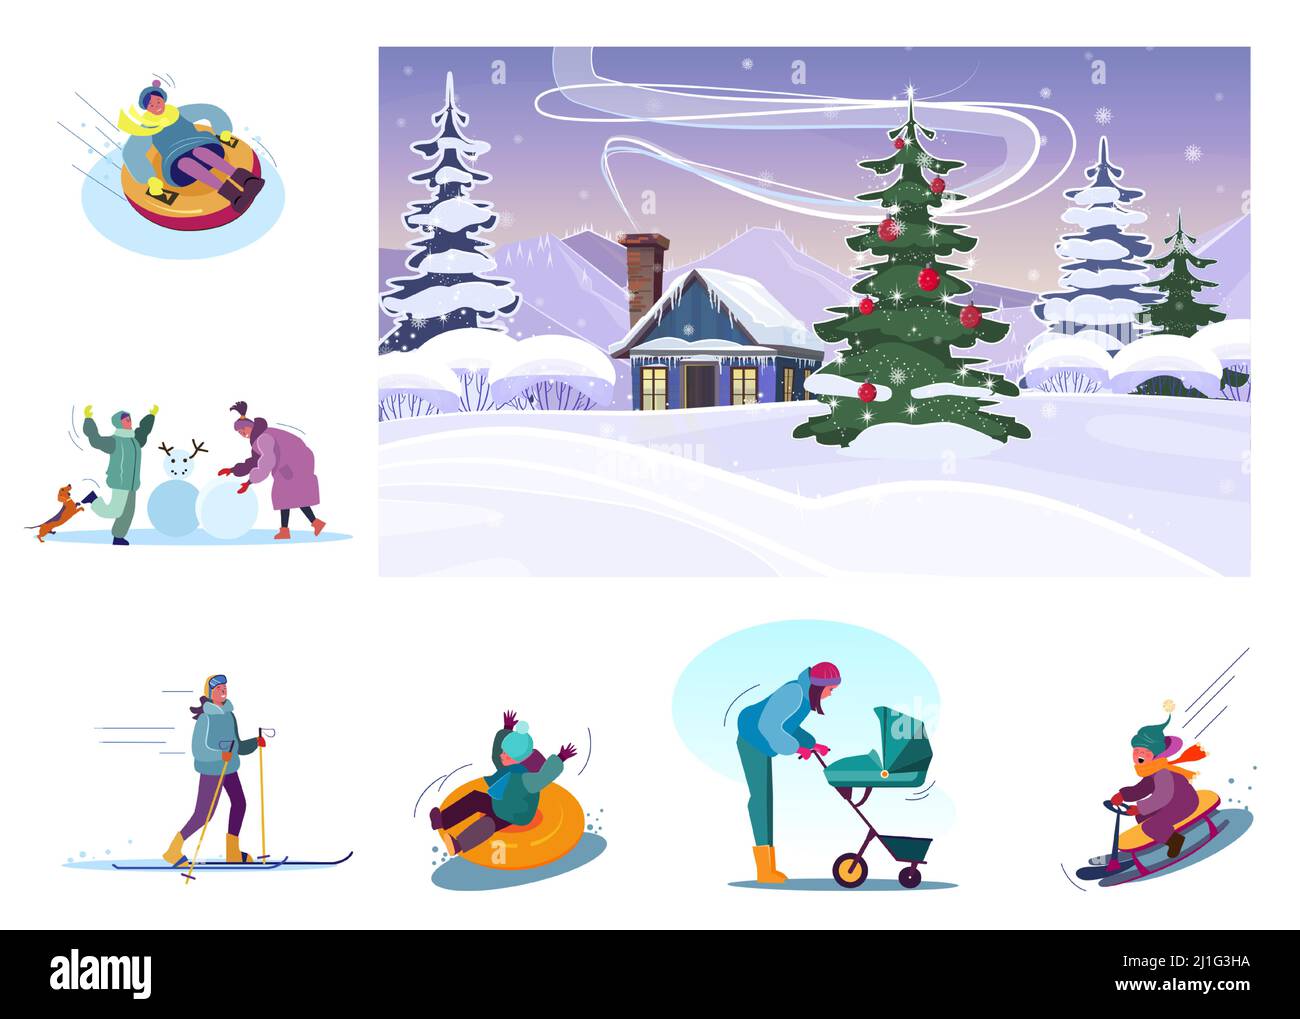 Page 20  Images de Combinaison Ski Enfant – Téléchargement gratuit sur  Freepik